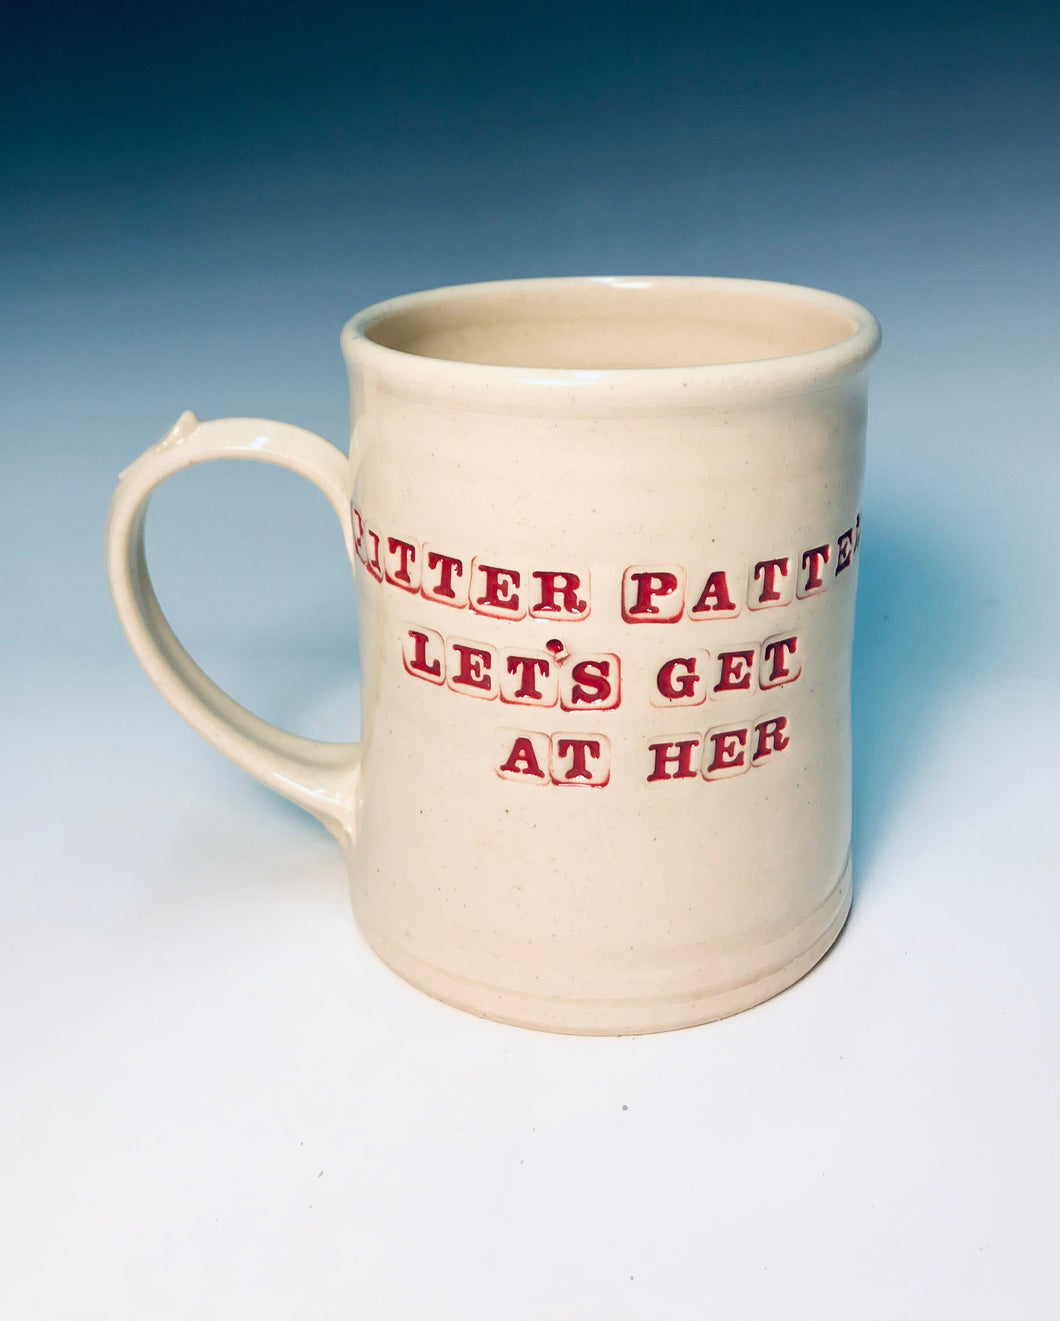 16oz Pitter patter lets get at her Mug.